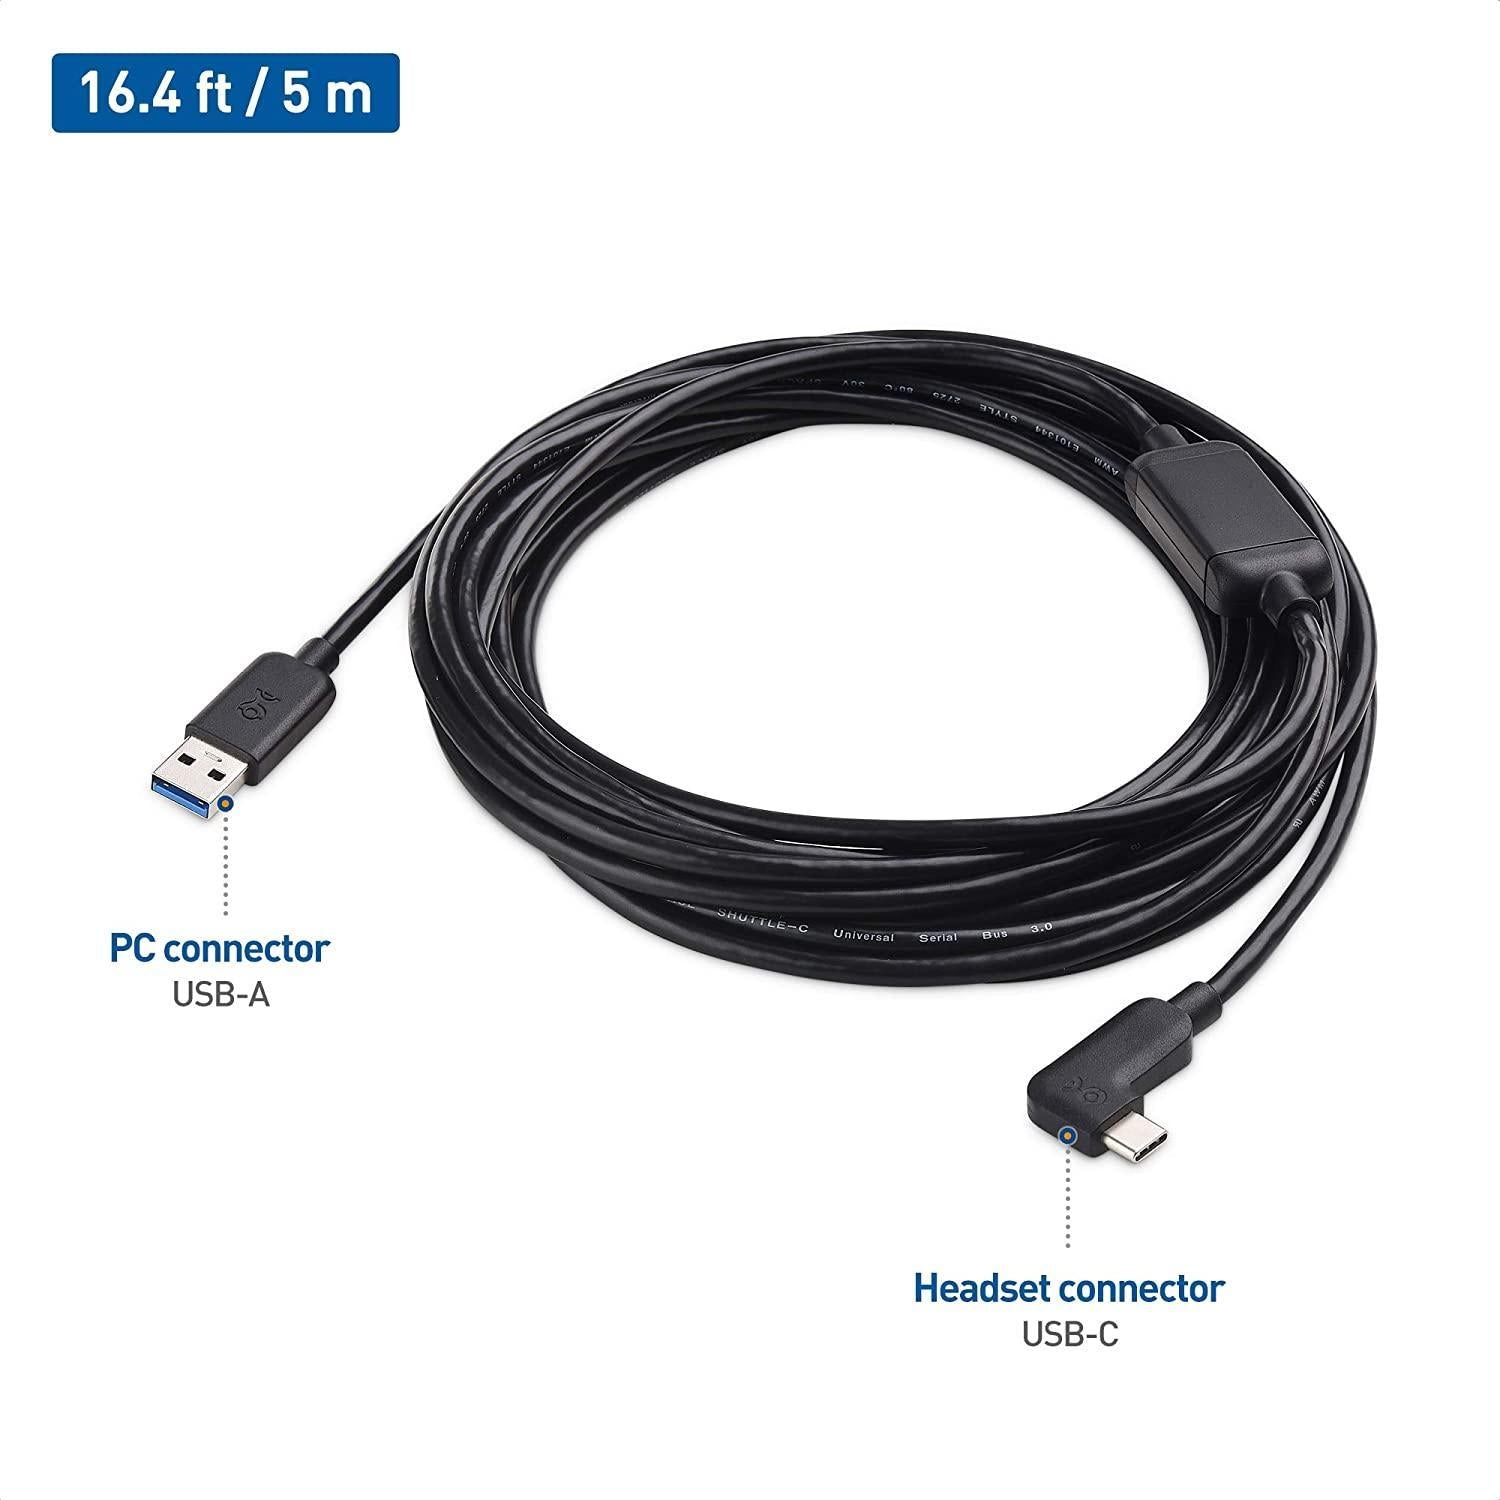 Cable Matters aktiv 7,5 m USB-C til USB-A VR Link-kabel for Oculus Quest 2 USB3.2 Gen1 5 Gbps 3A Super Speed VR Link-kabel